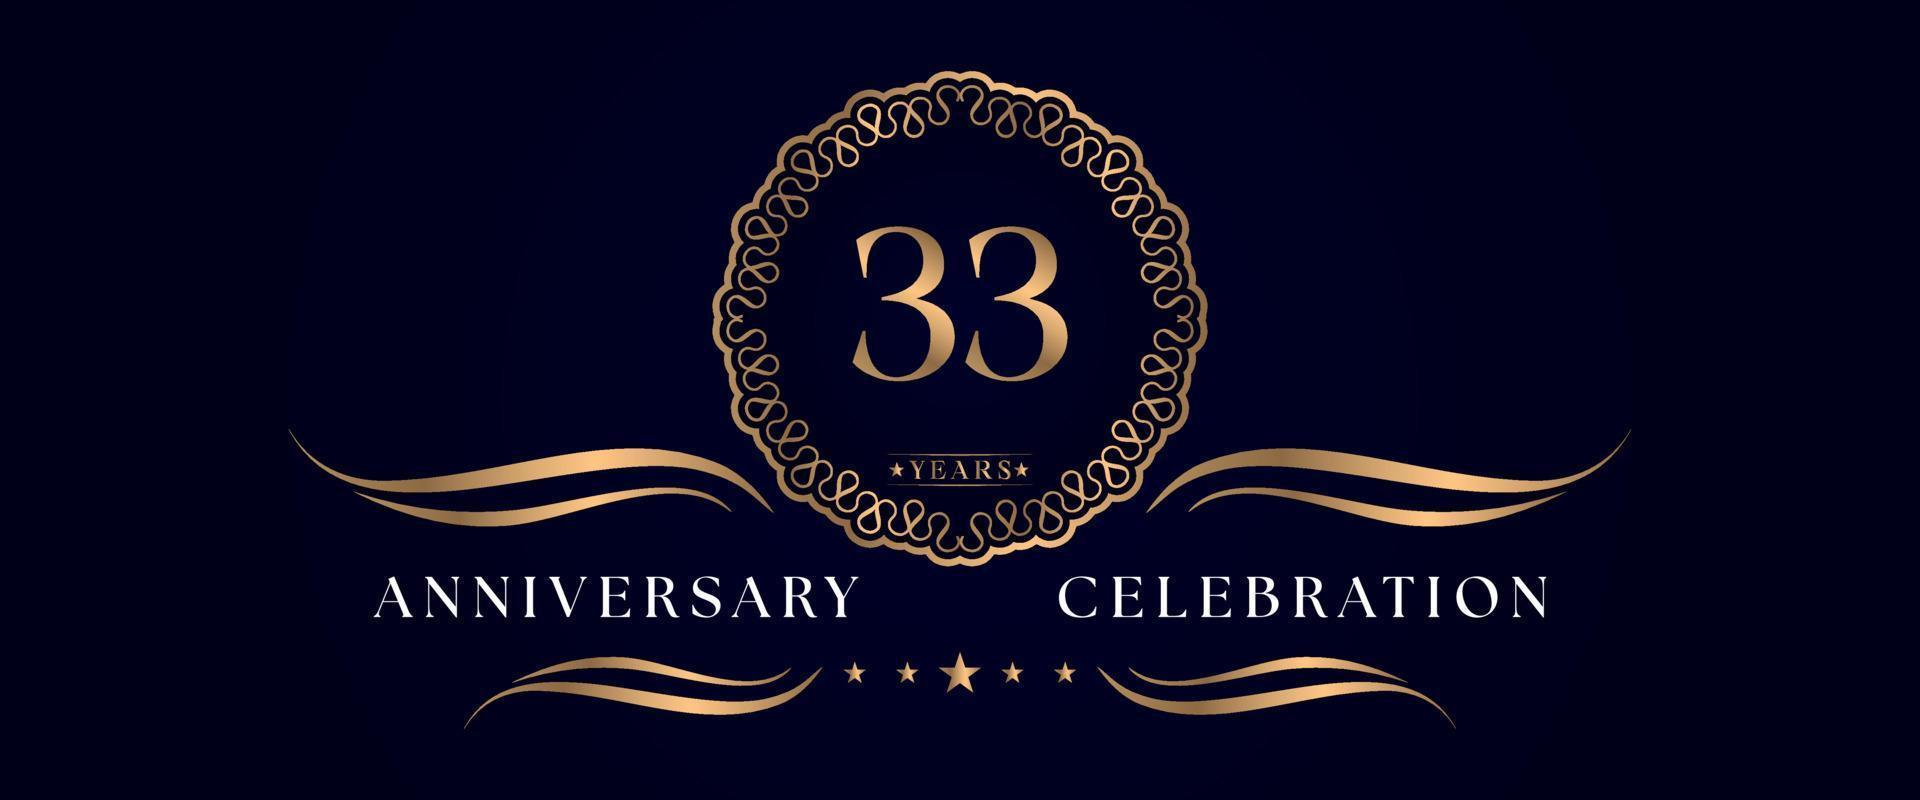 Celebrazione dell'anniversario di 33 anni con elegante cornice circolare isolata su sfondo blu scuro. disegno vettoriale per biglietto di auguri, festa di compleanno, matrimonio, festa evento, cerimonia. Logo dell'anniversario di 33 anni.